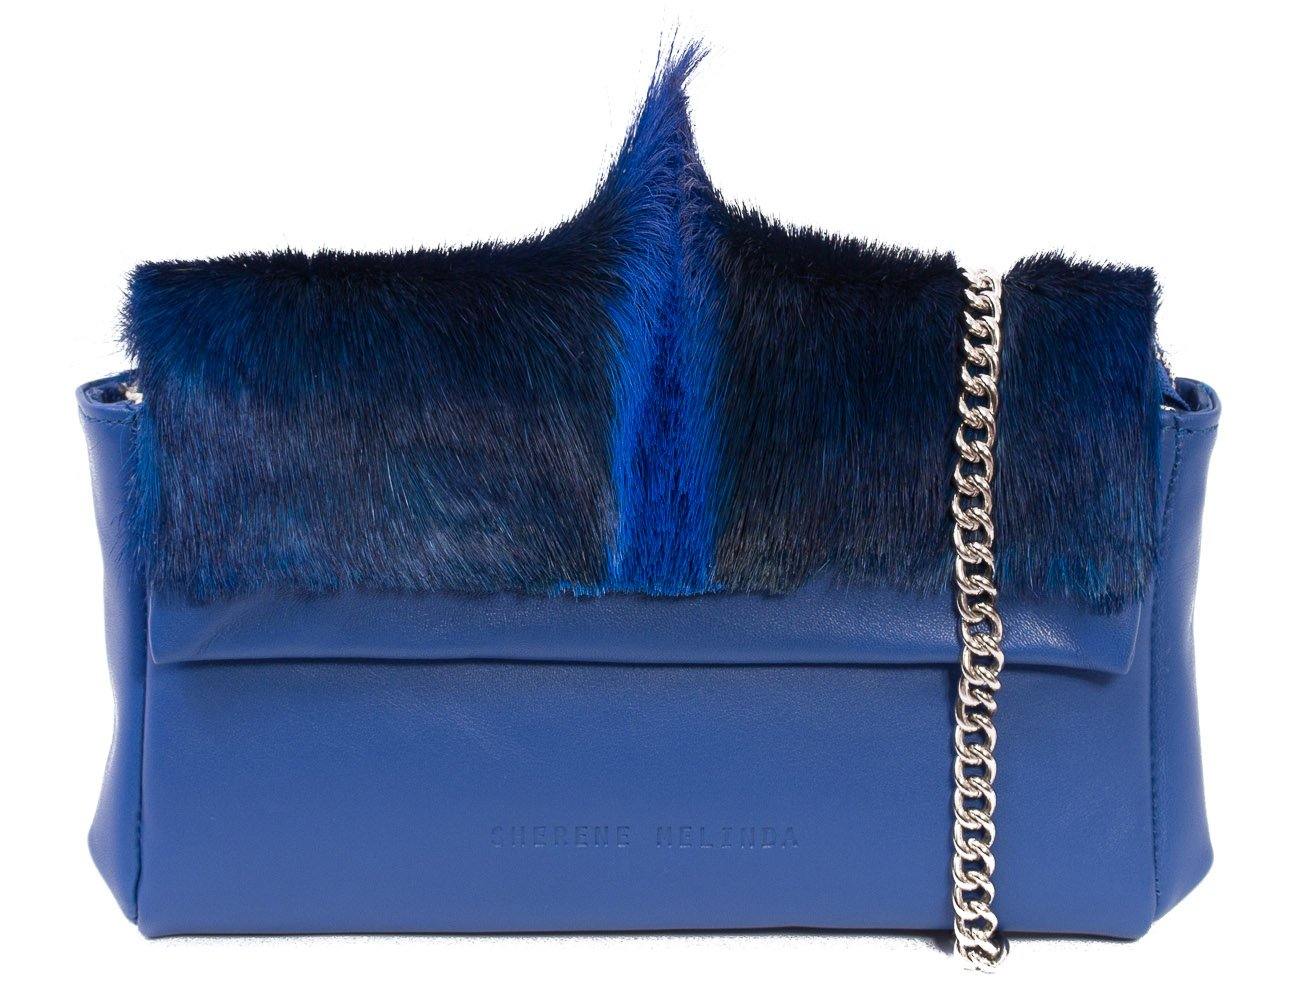 sherene melinda springbok hair-on-hide royal blue leather Sophy SS18 Clutch Bag fan front strap